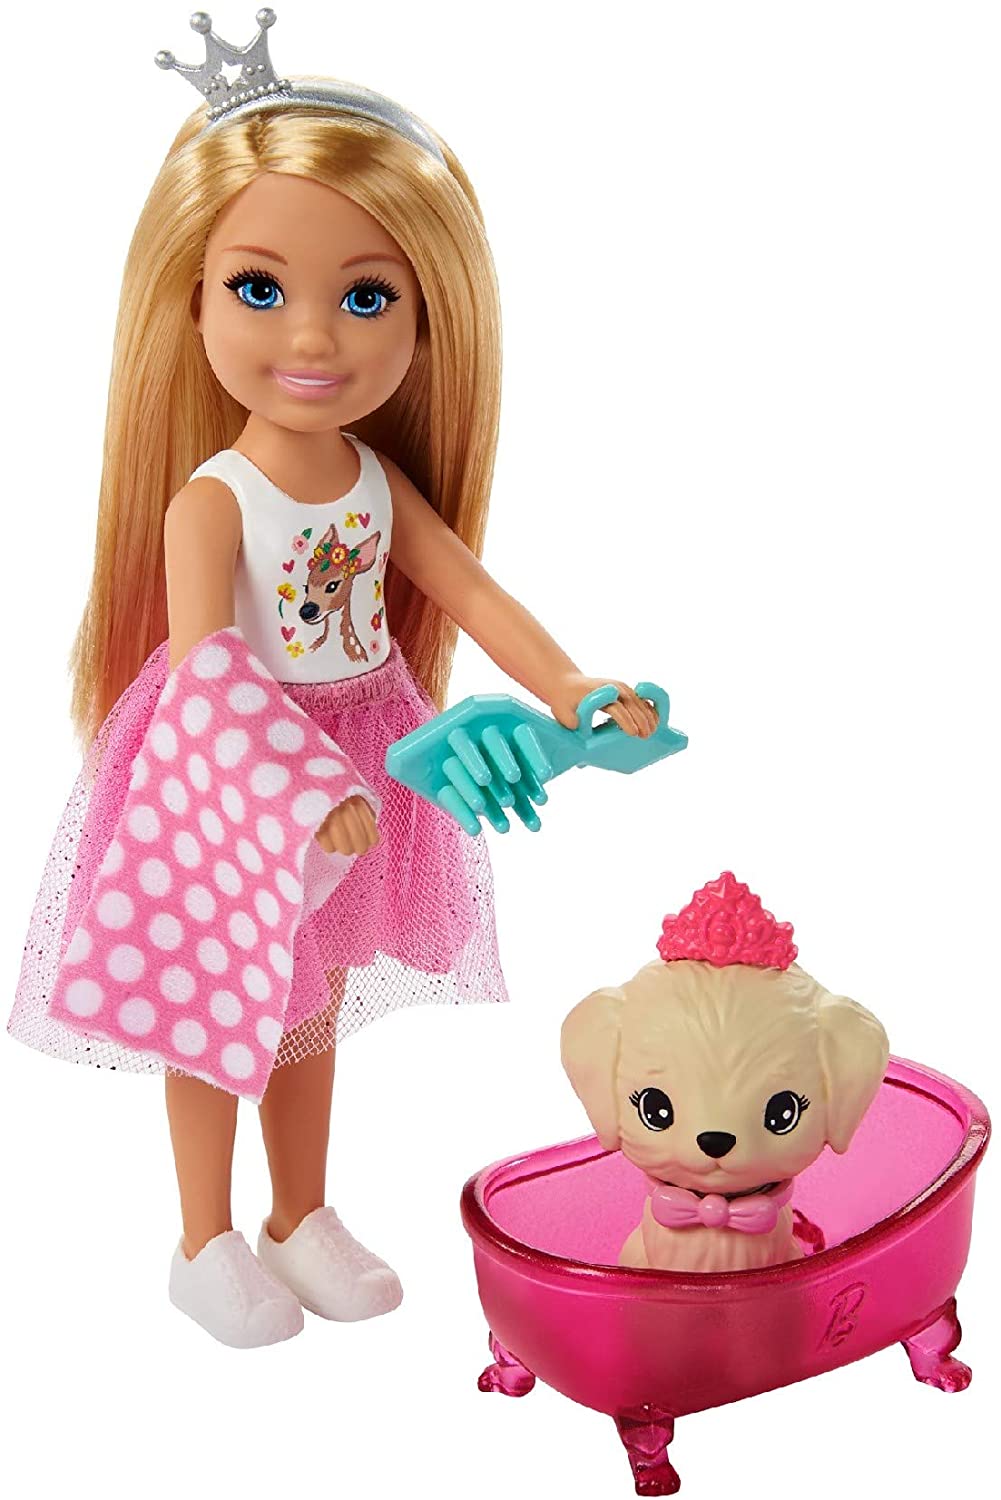 Barbie Princess Adventure Puppe und Spielset